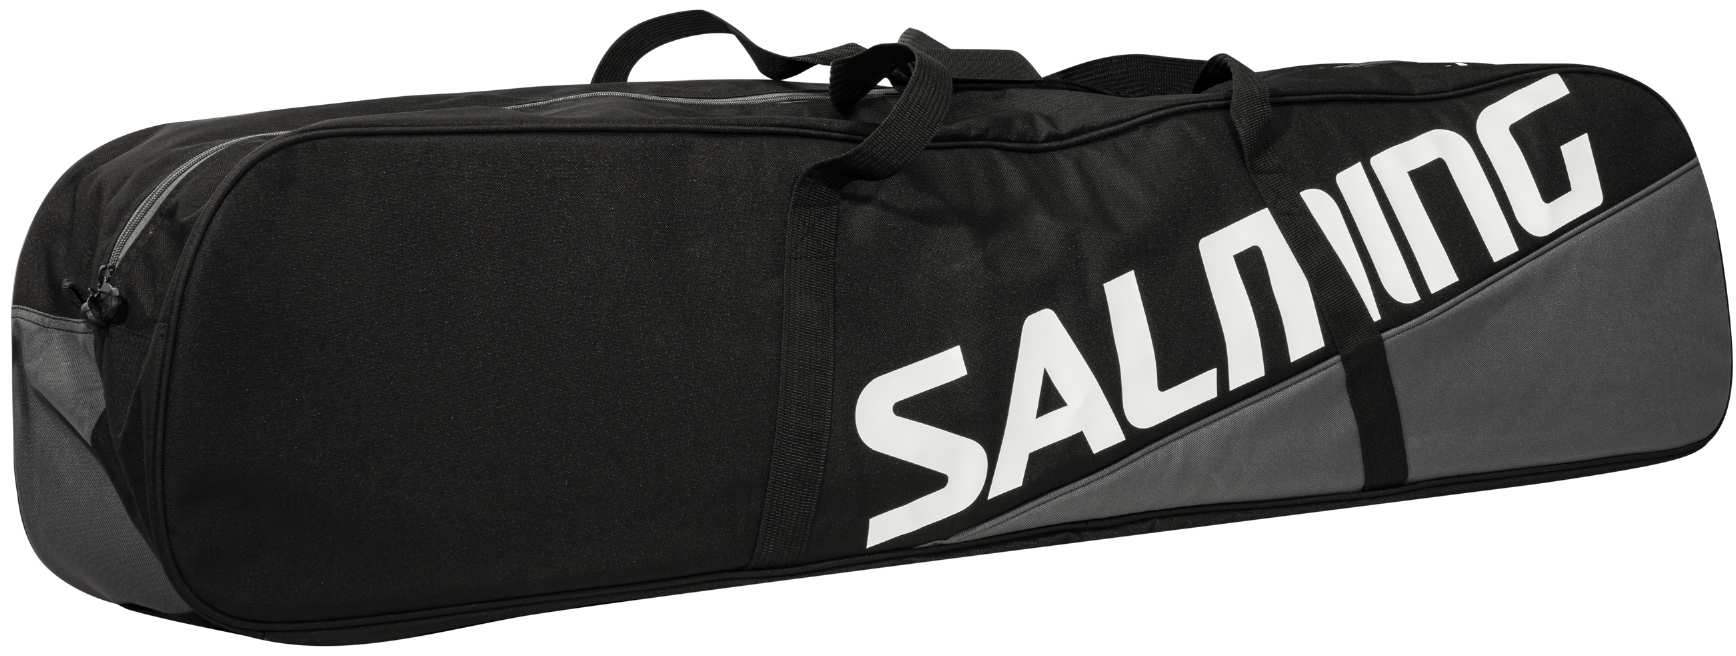 Floorball equipment bag